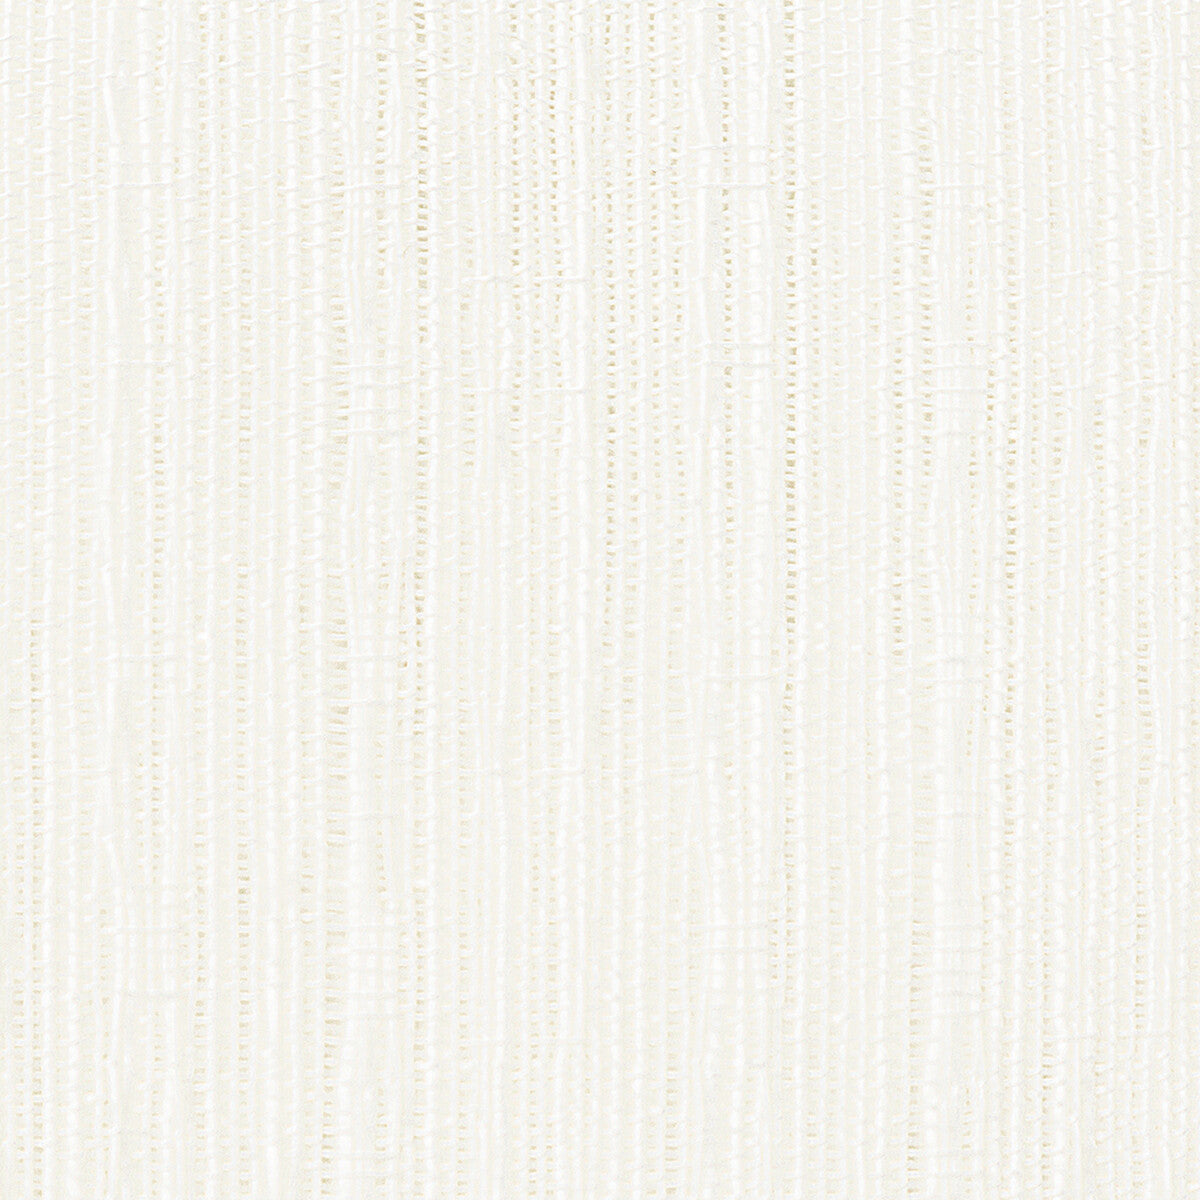 Kravet Basics fabric in 4771-101 color - pattern 4771.101.0 - by Kravet Basics